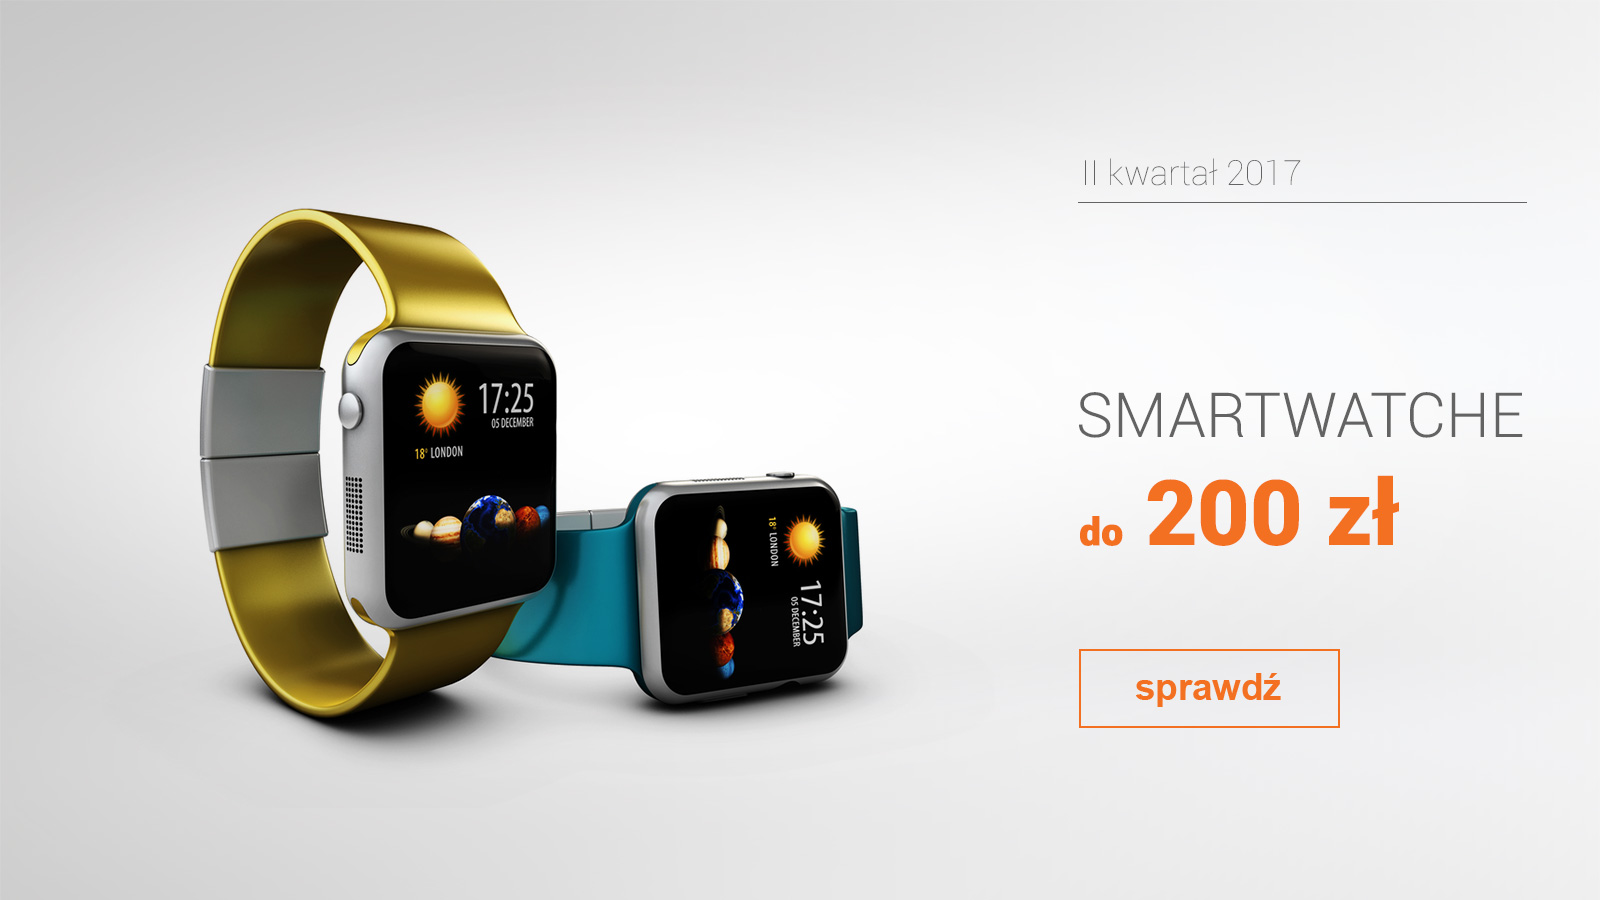 Smartwatche do 200 zł - II kwartał 2017